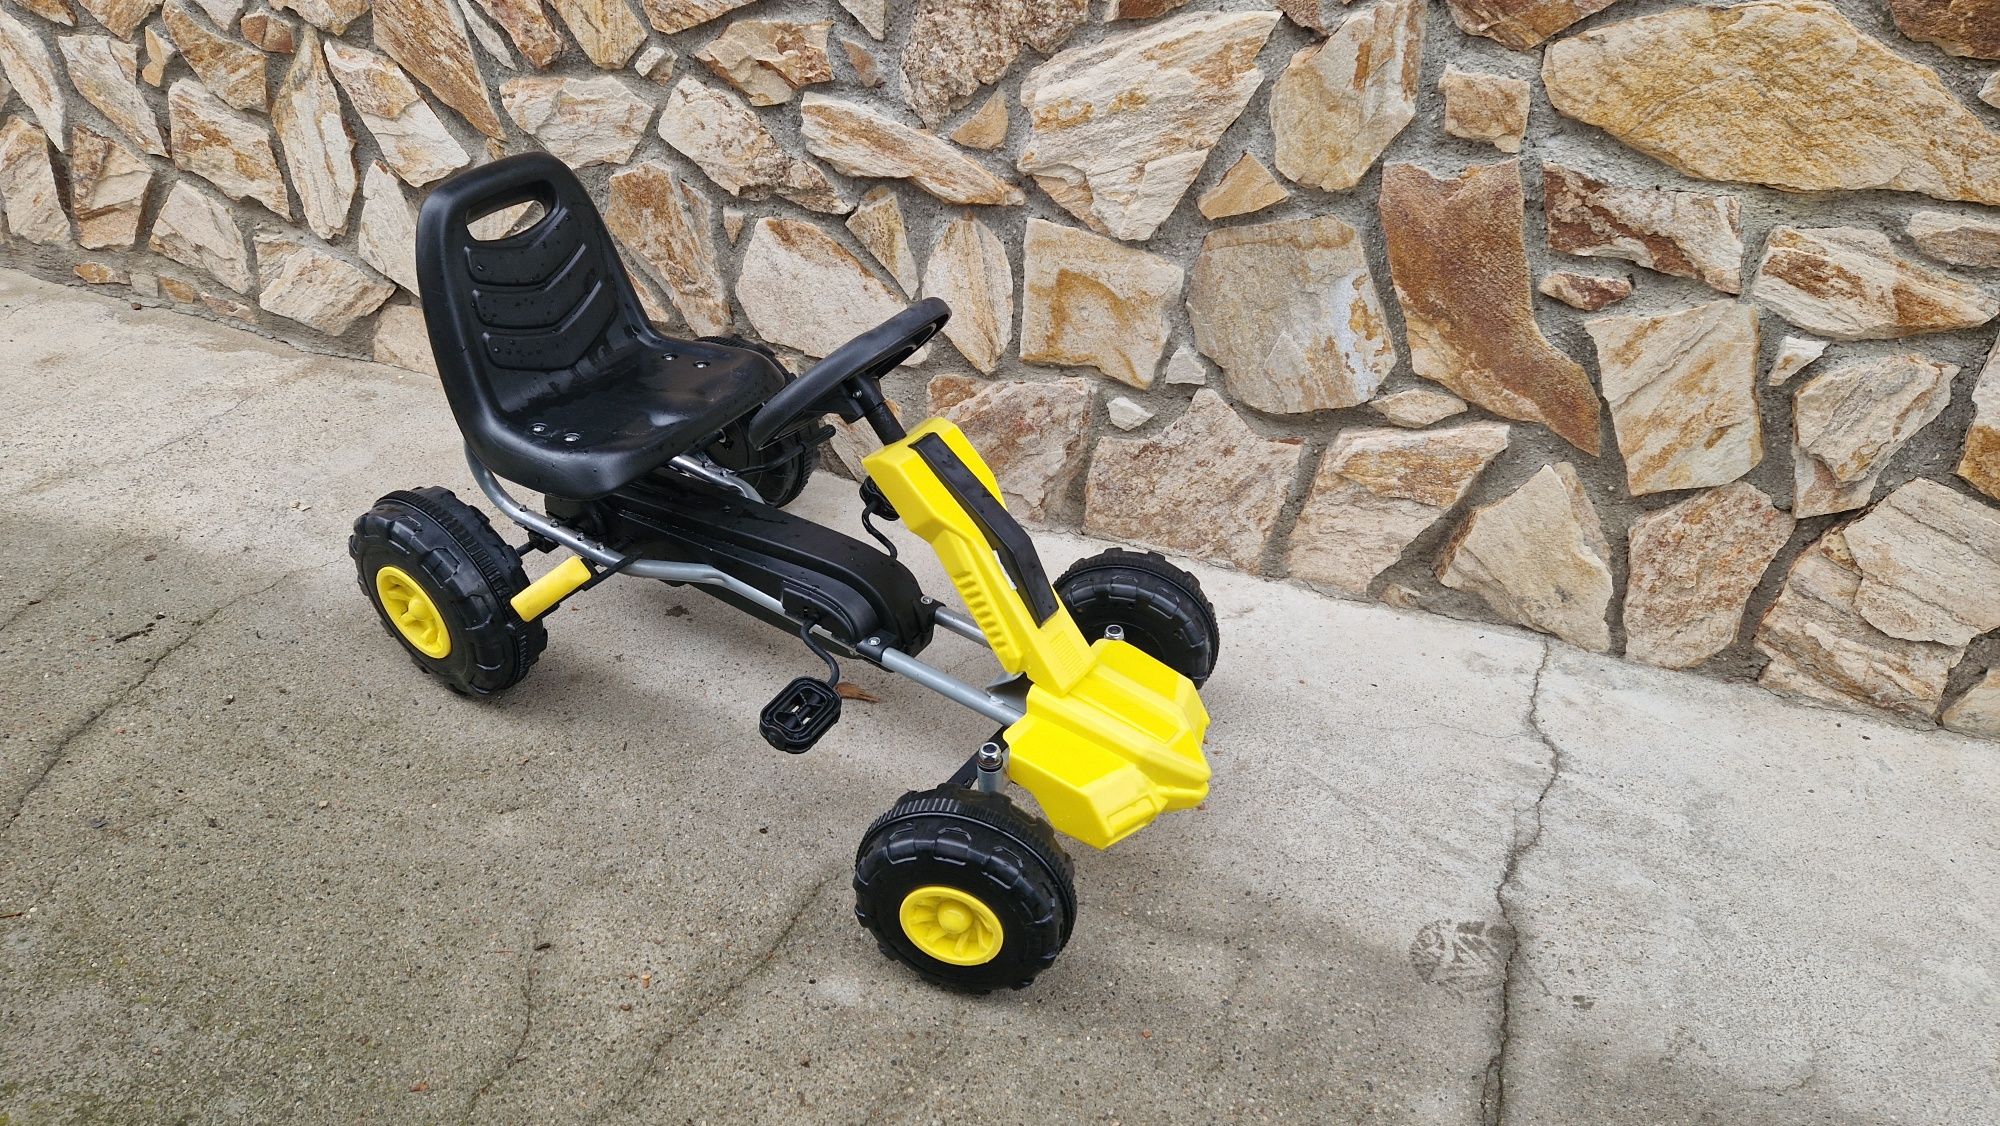 Детска кола с педали